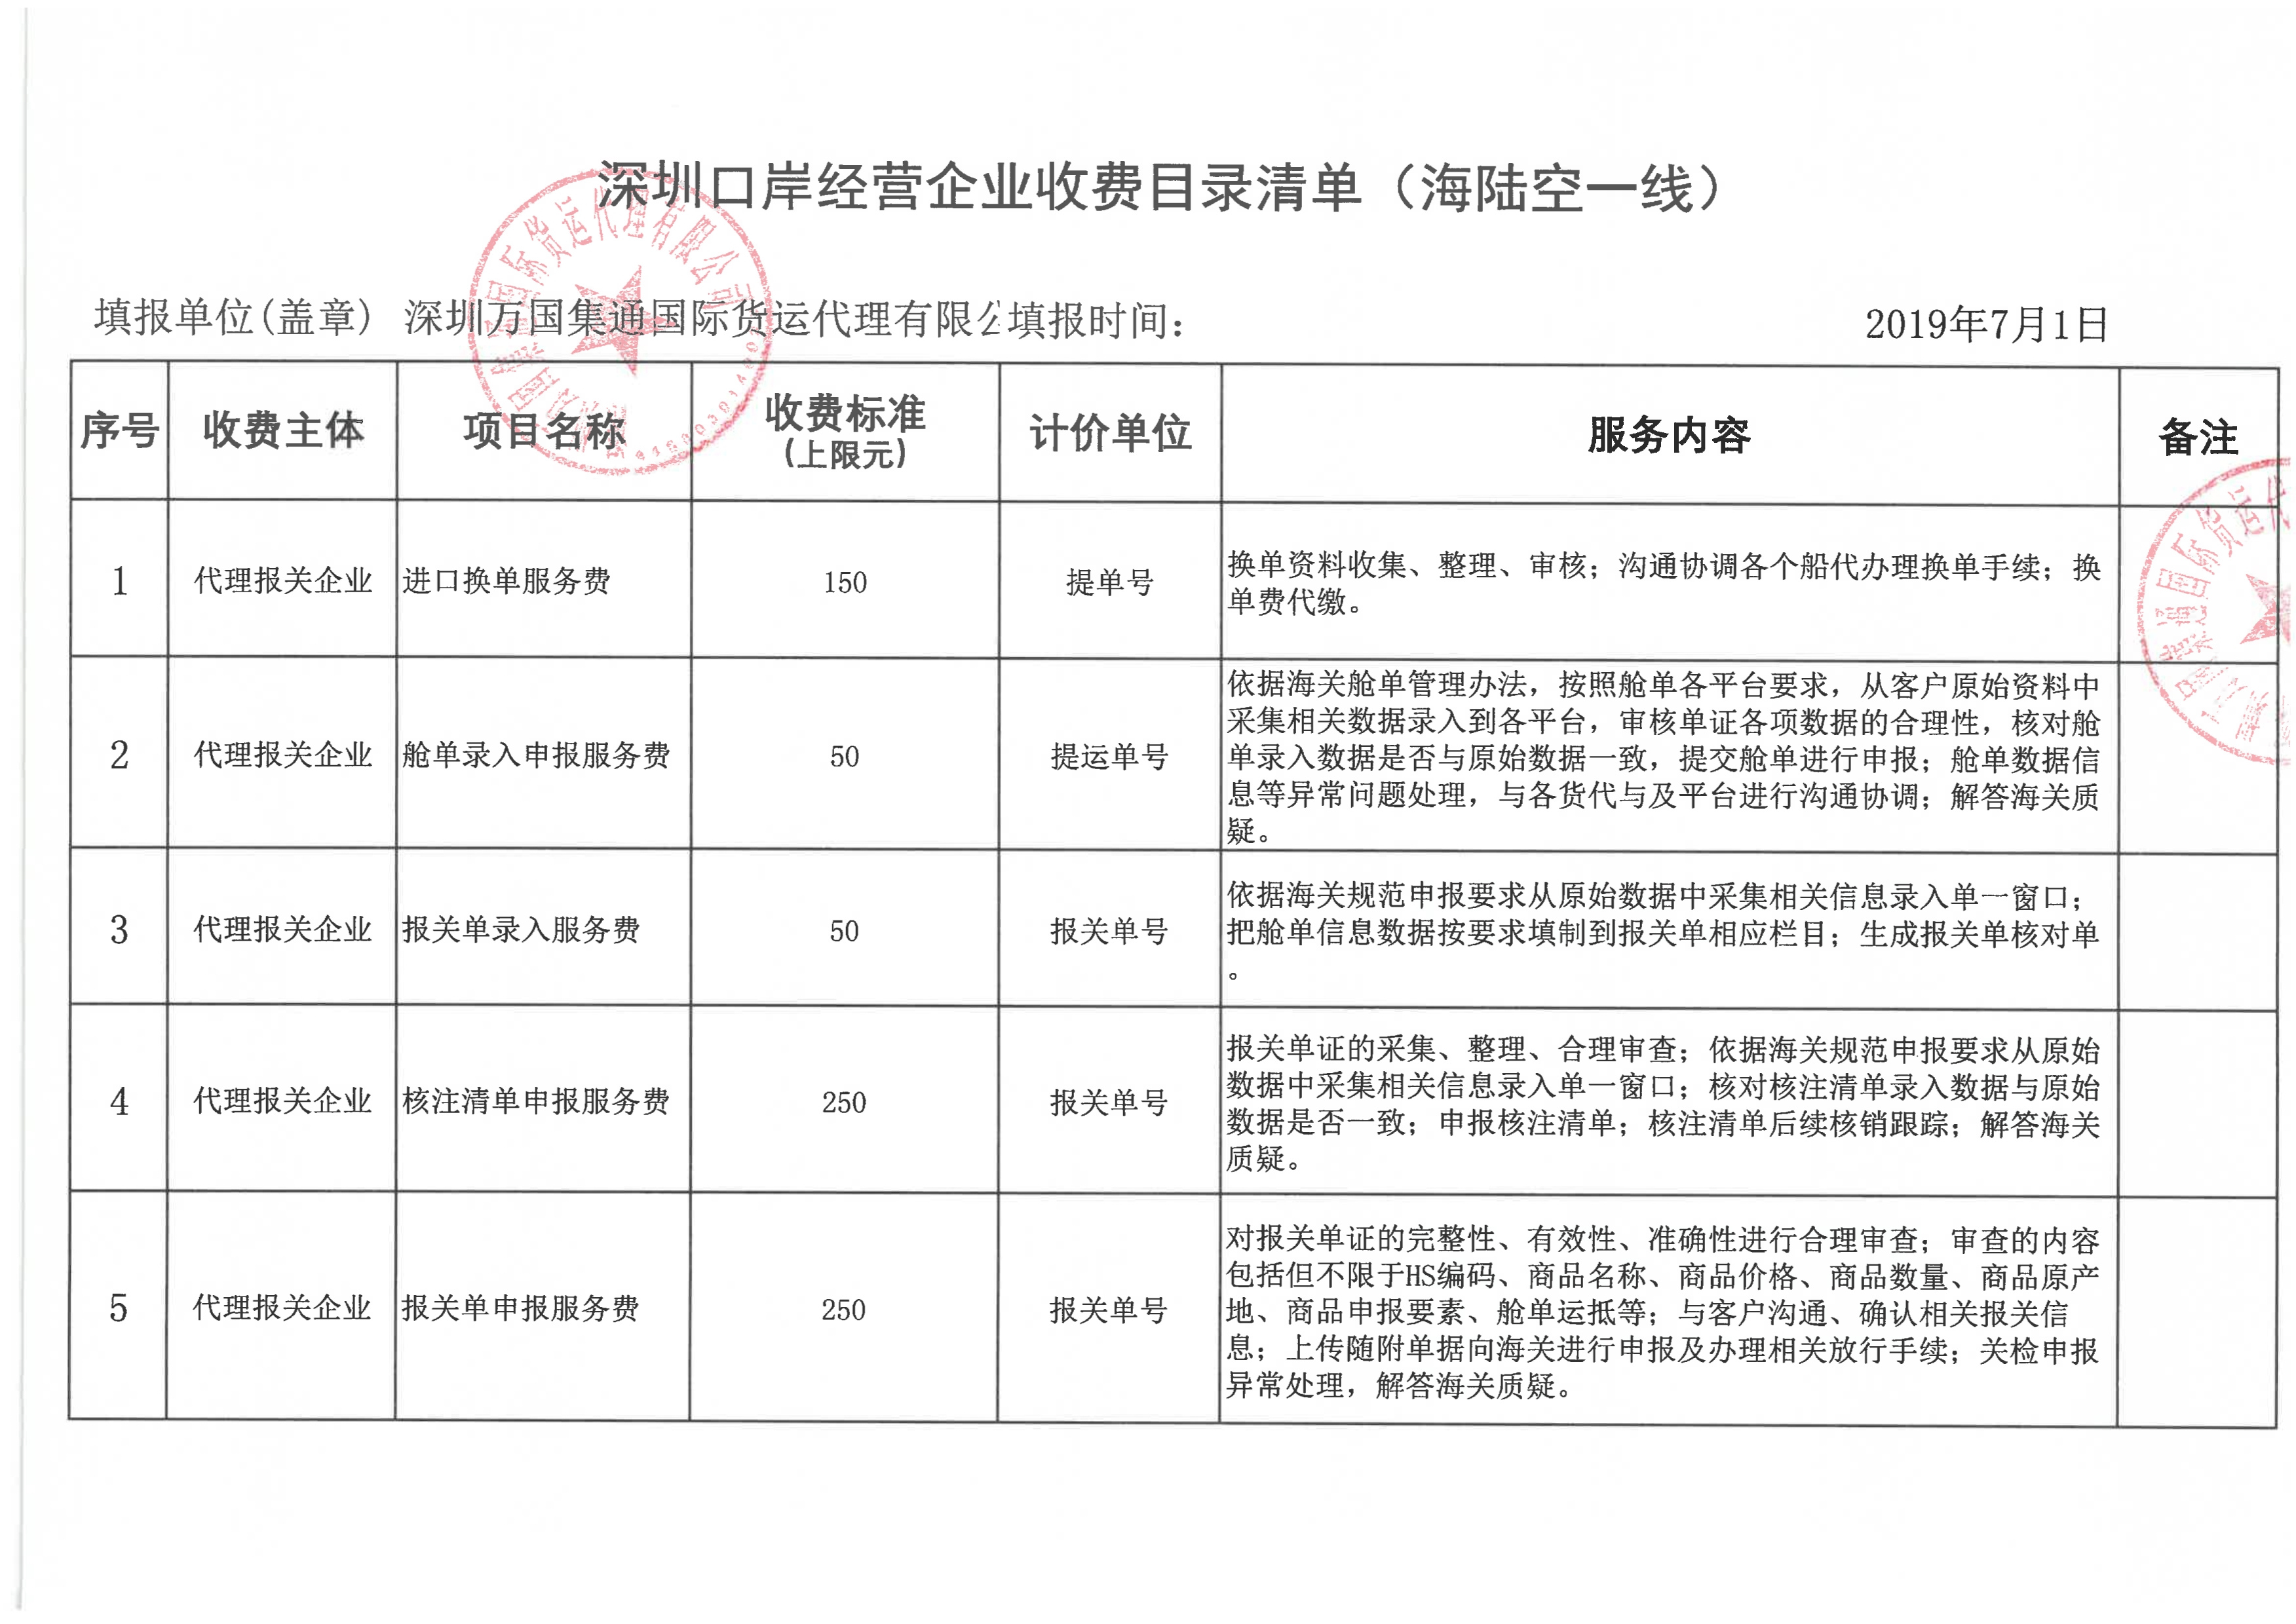 深圳万国集通国际货运代理有限公司收费目录清单_1.jpg